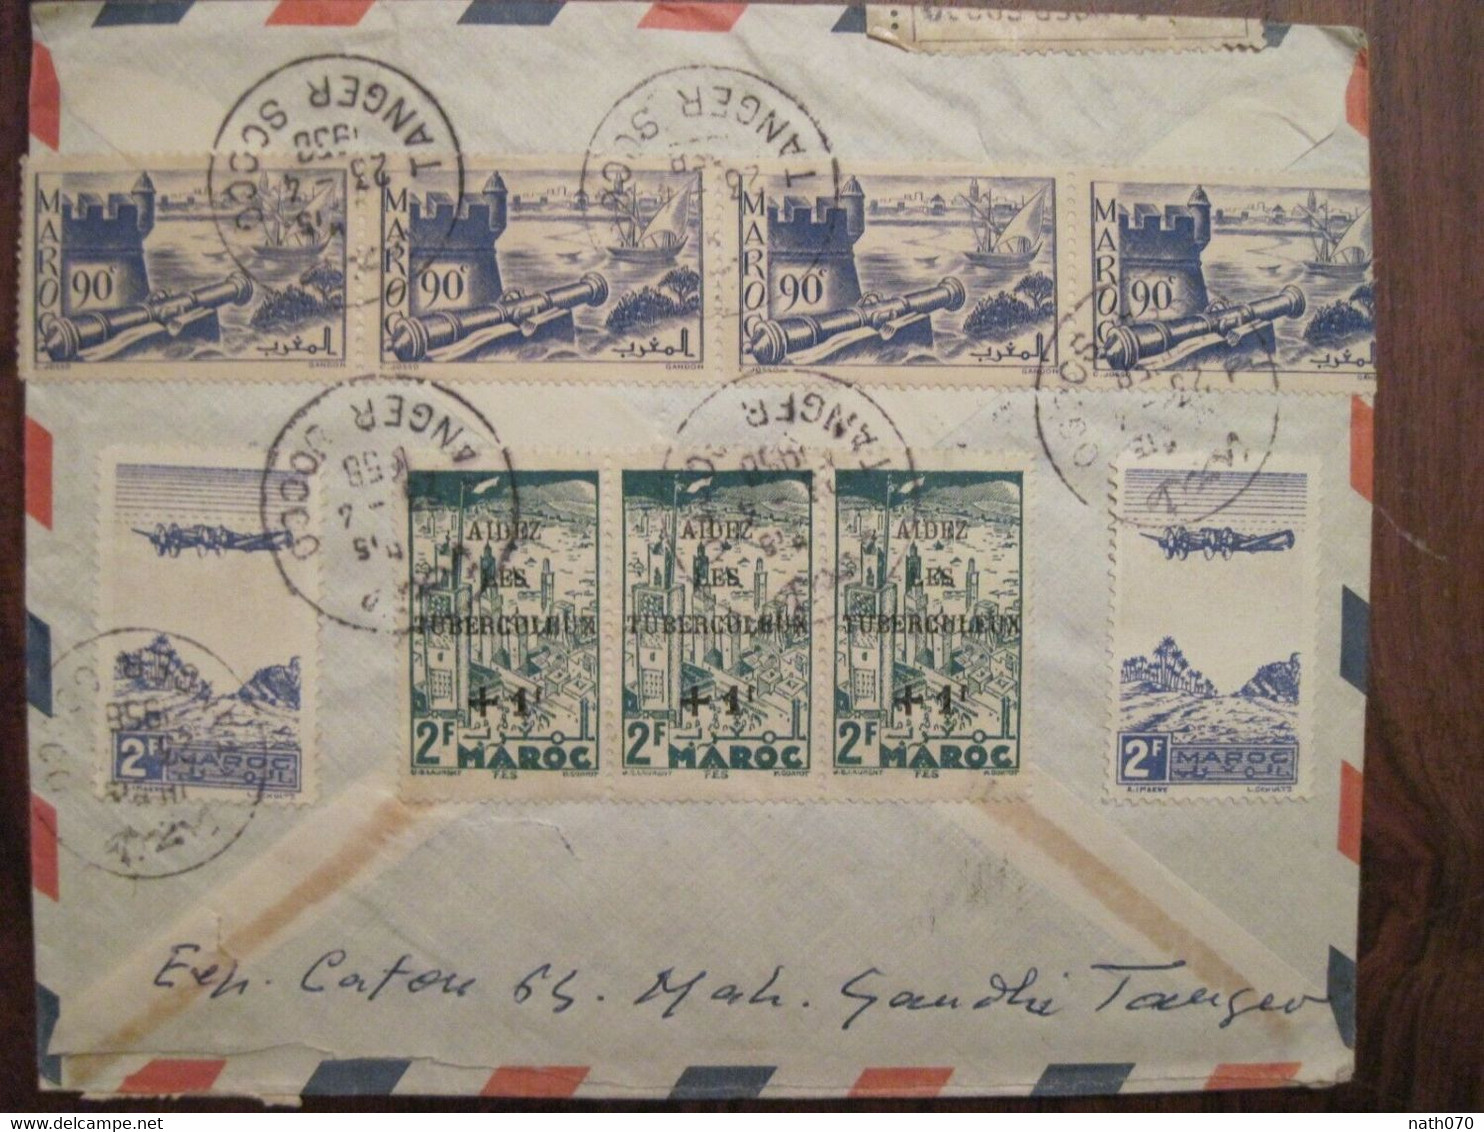 MAROC 1958 TANGER SOCCO FRANCE Lettre Cover Air Mail Enveloppe Cover Recommandé Bloc Voir Dos Aidez Les Tuberculeux - Briefe U. Dokumente